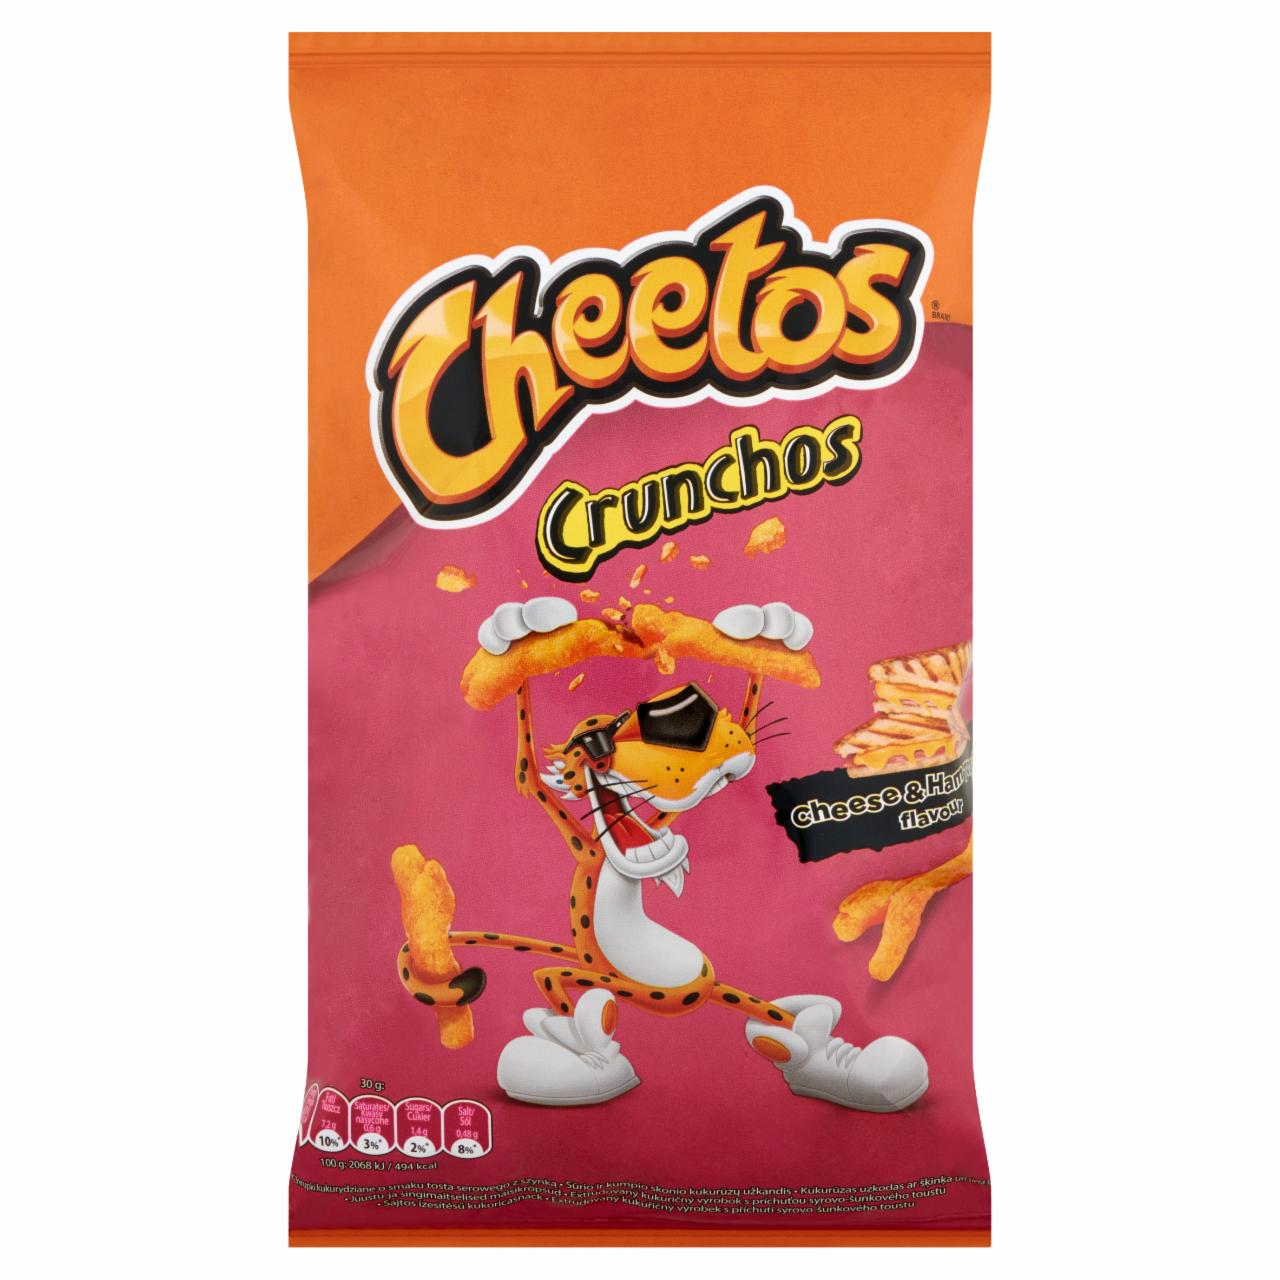 Képek - Cheetos Crunchos sajtos ízesítésű kukoricasnack 95 g